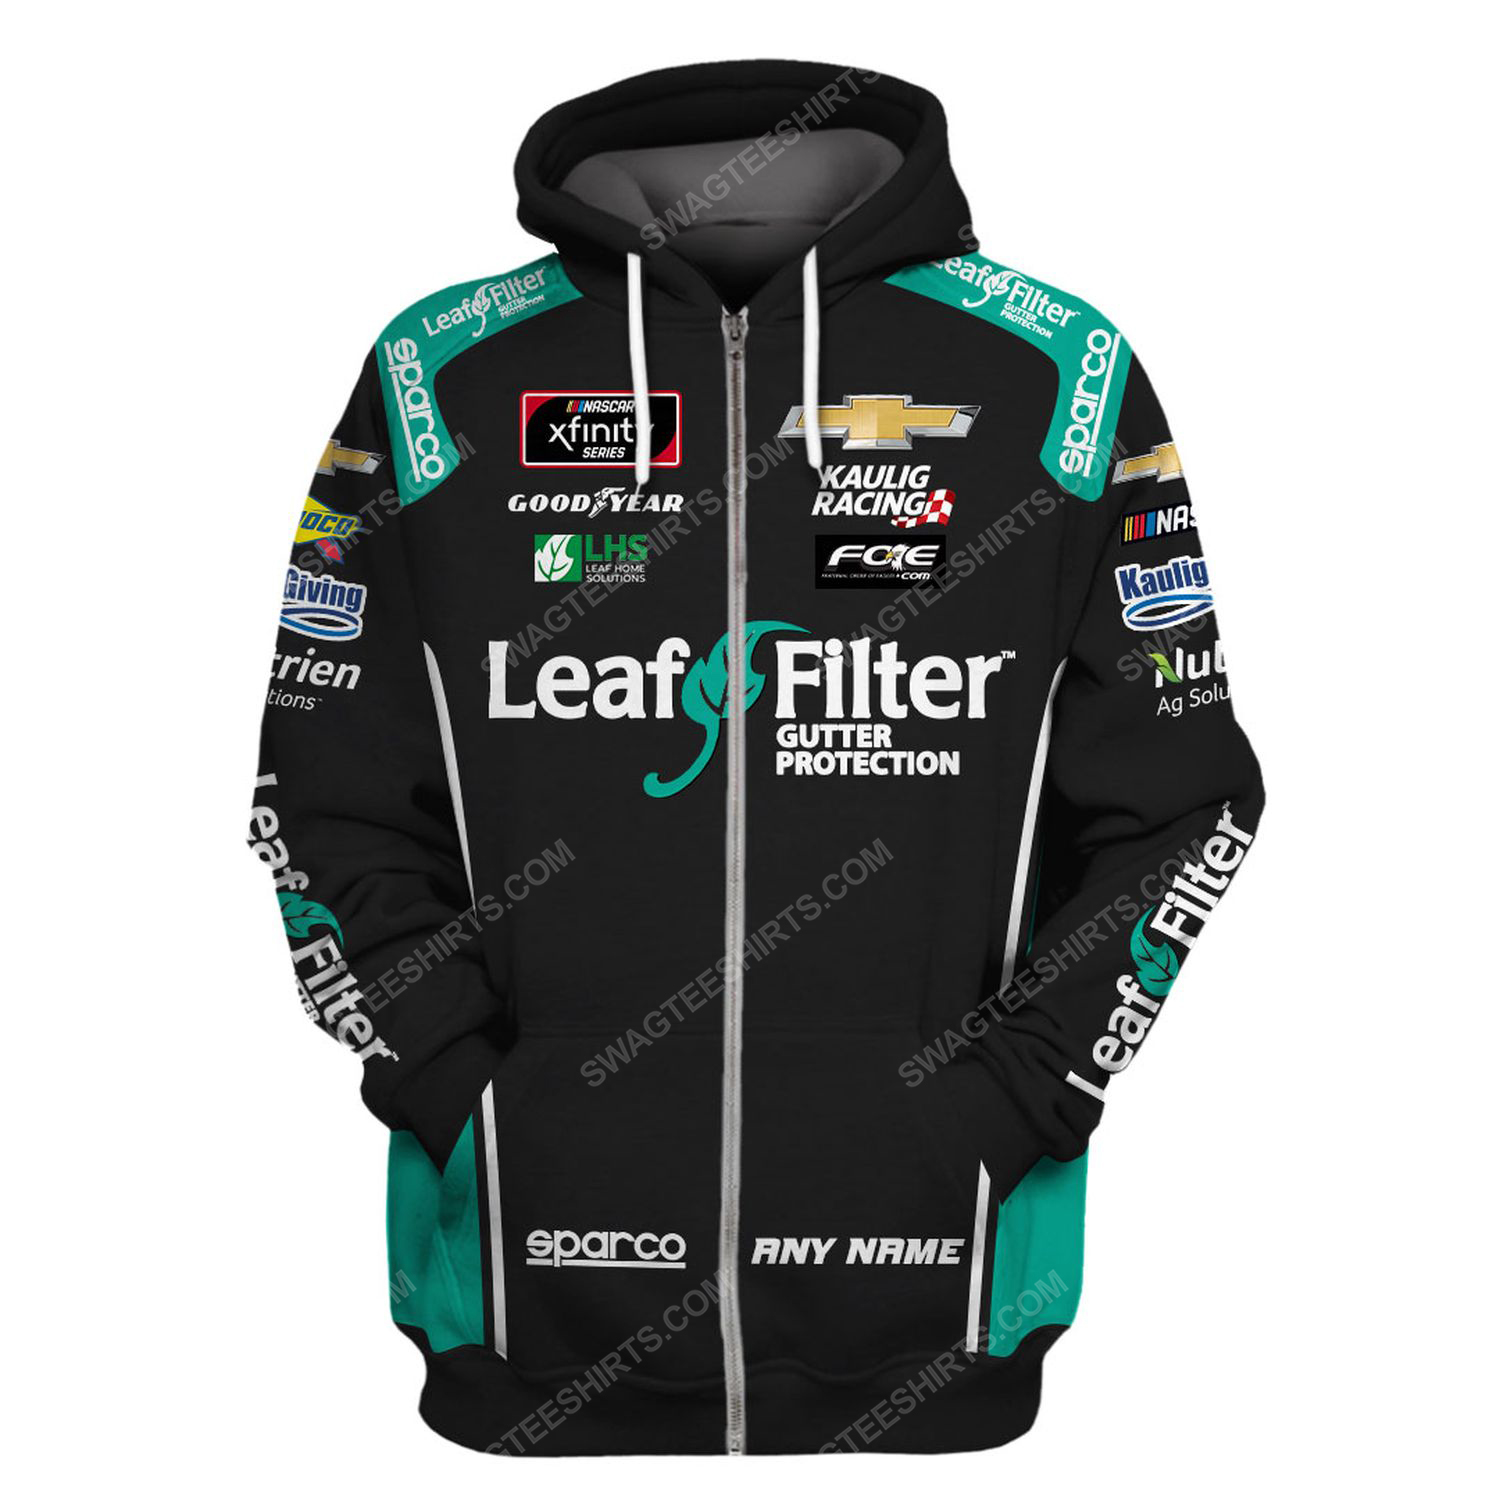 Custom leaffilter gutter protection racing team motorsport full printing zip hoodie